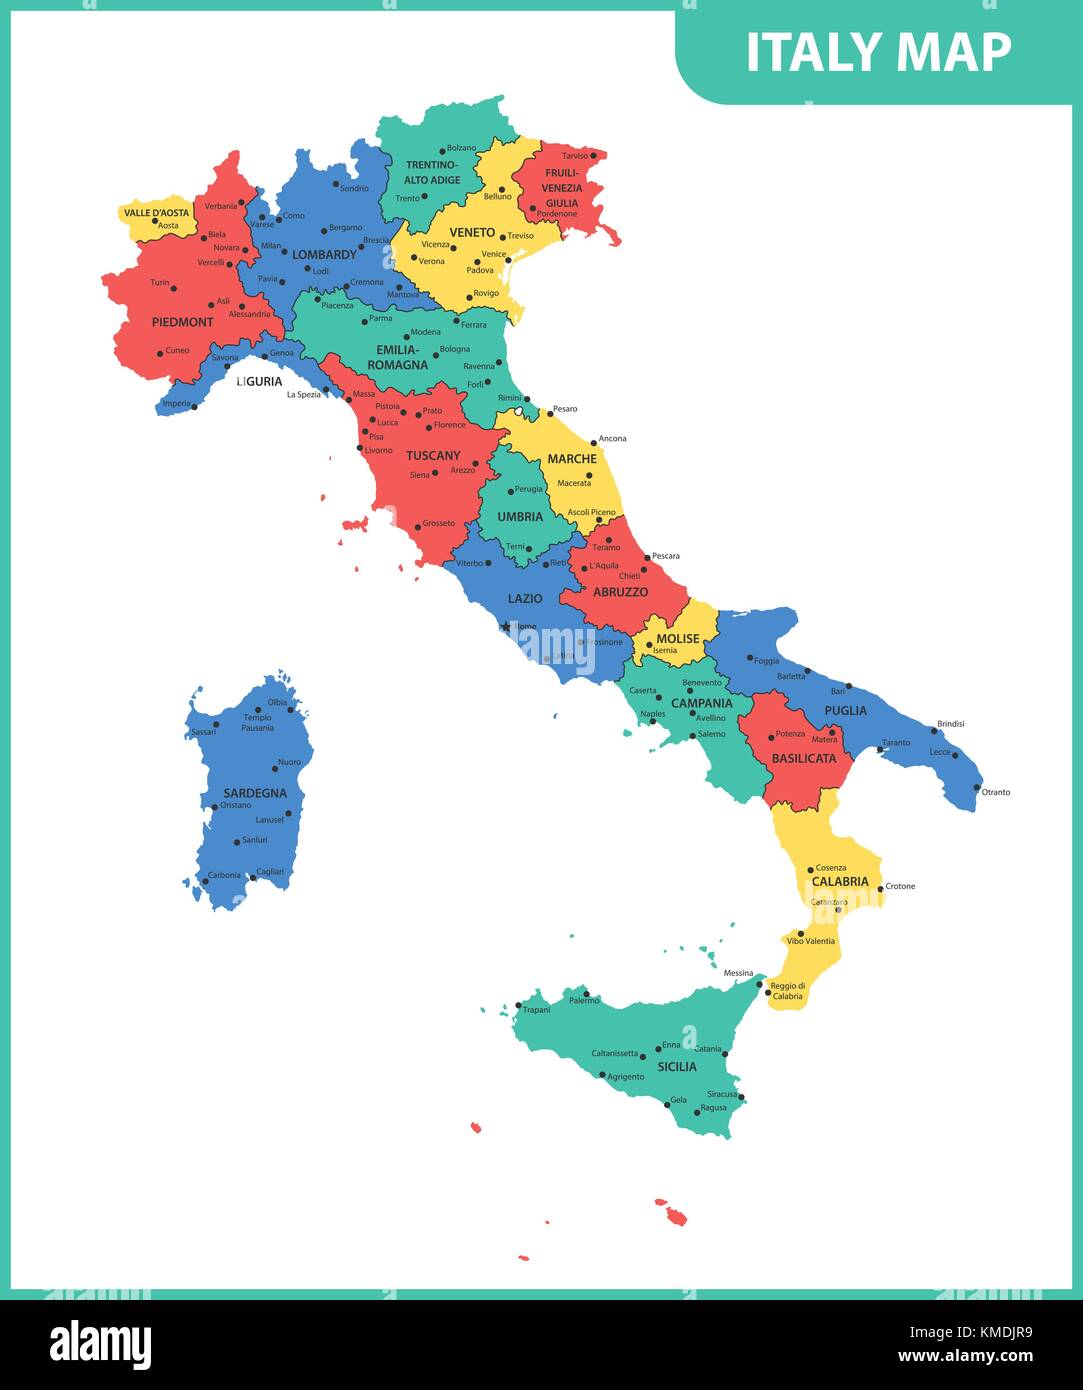 La mappa dettagliata dell'Italia con le regioni o gli stati e città, capitale Illustrazione Vettoriale